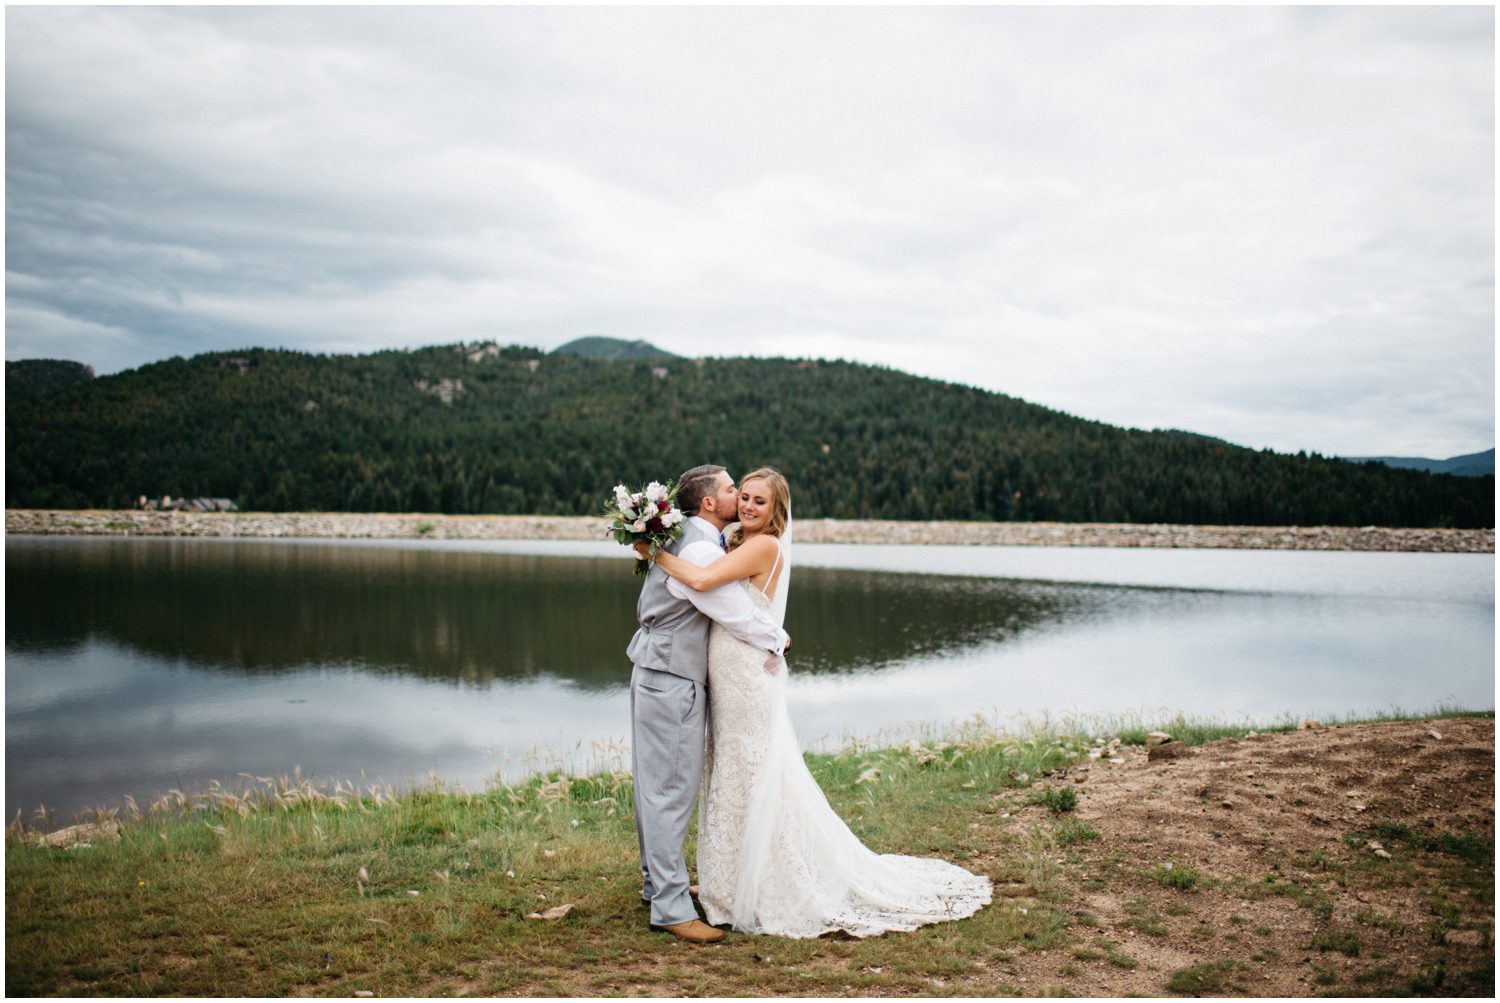 The Barn at Evergreen Memorial Park, Colorado Wedding Photographer